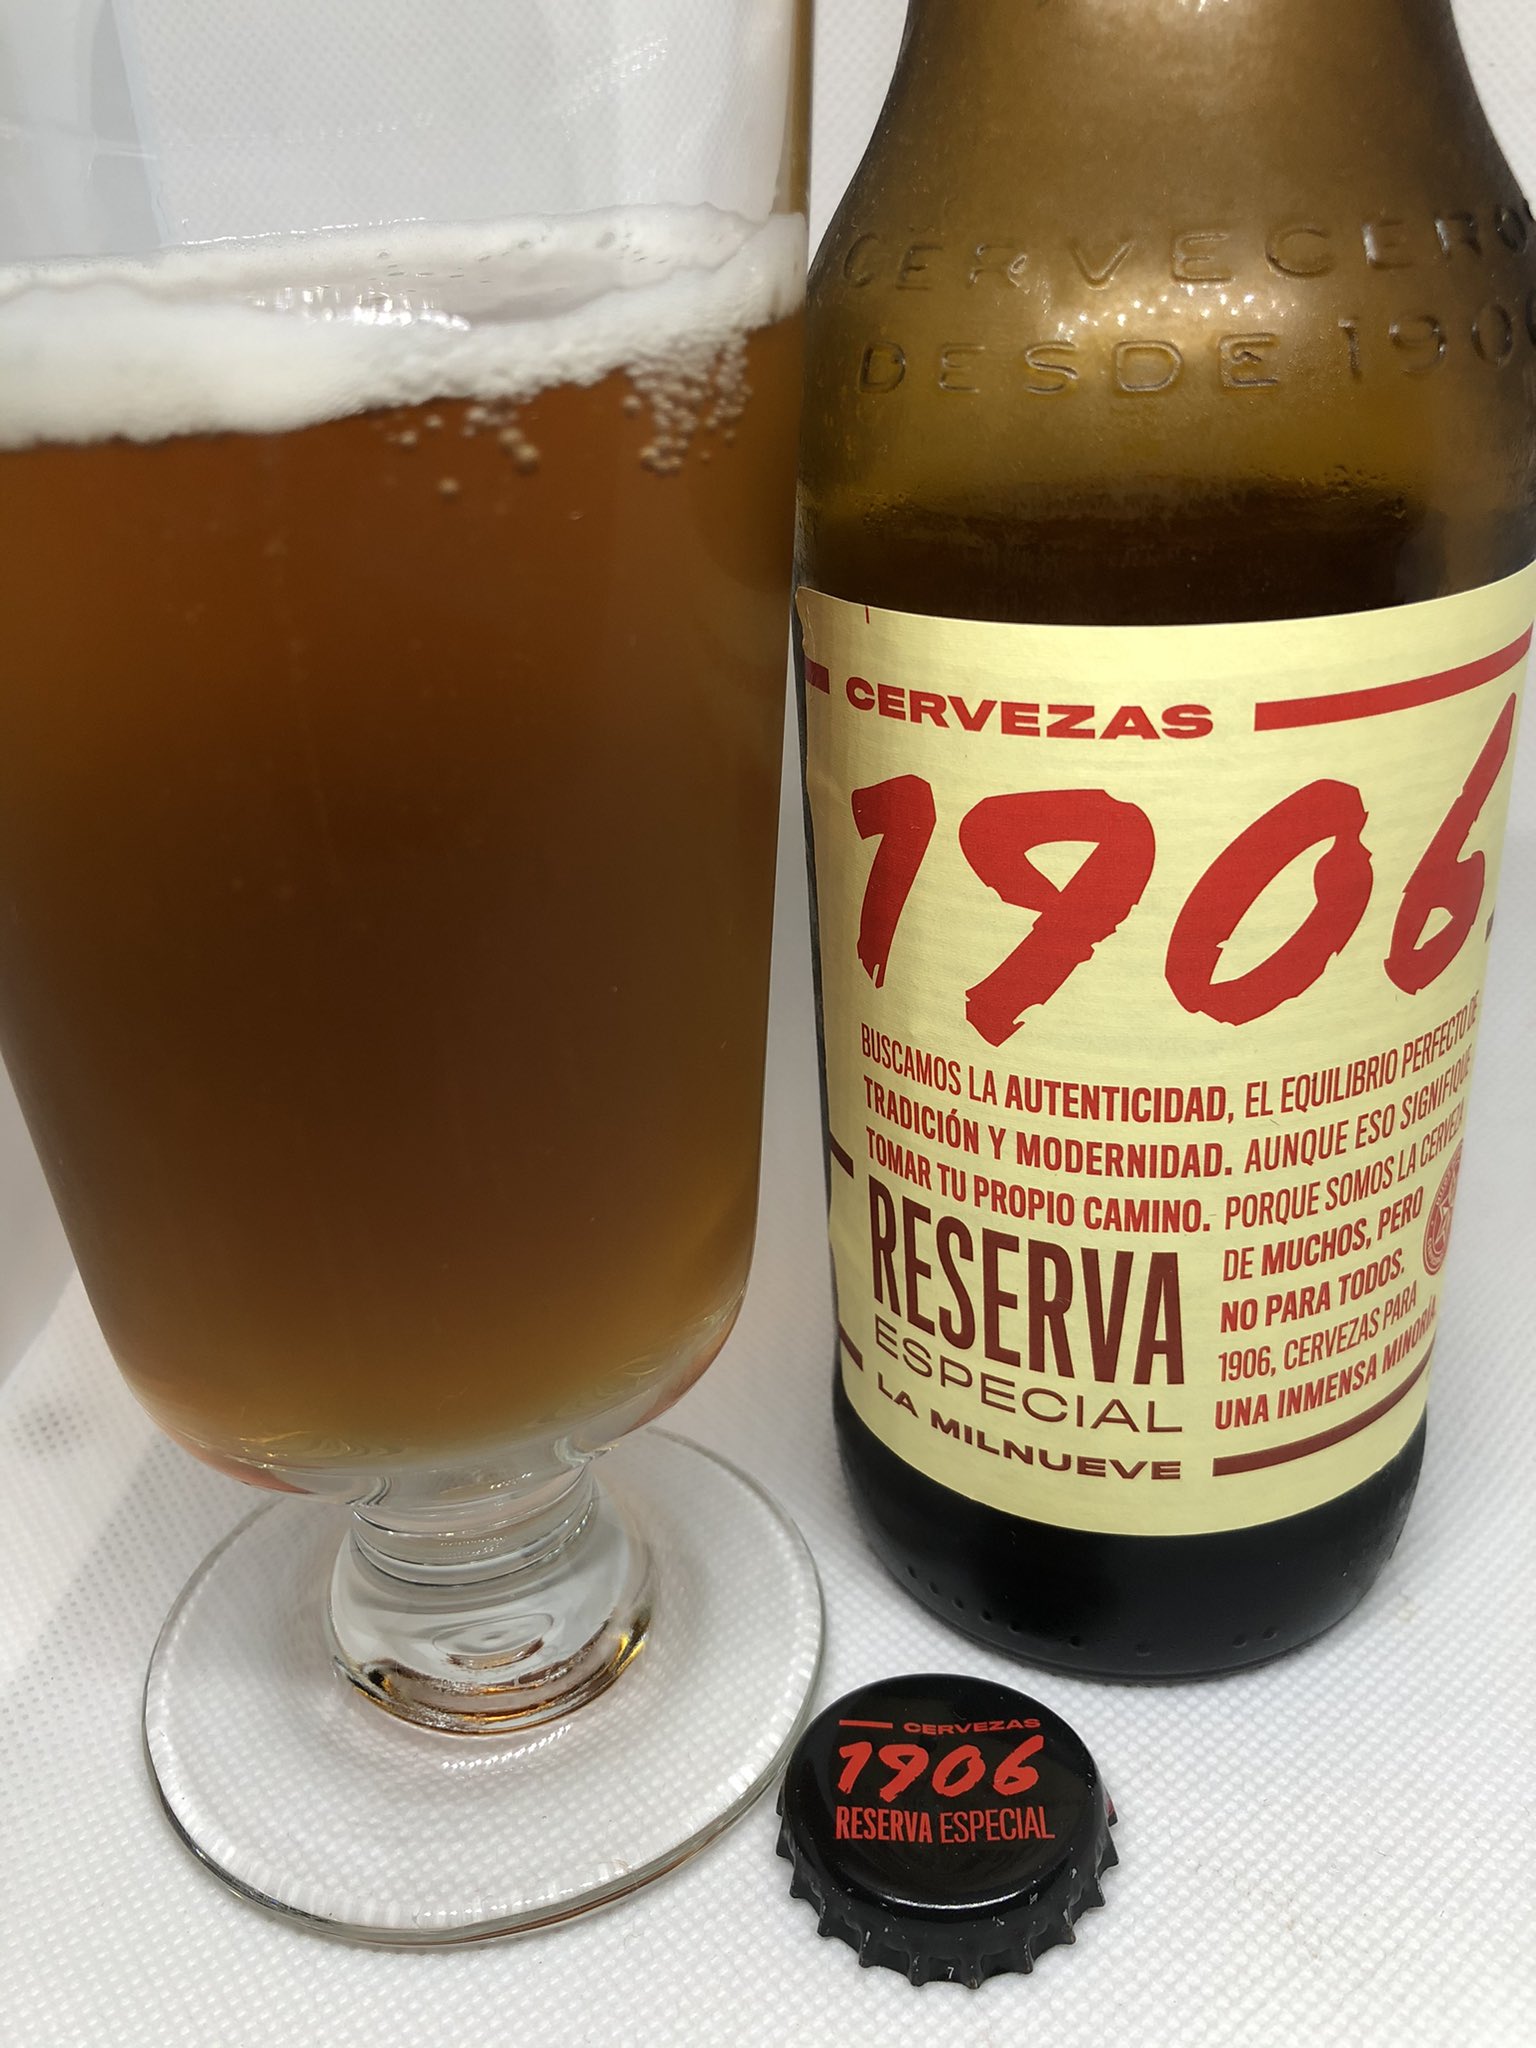 こはキャン 今日のビールは スペインのビール エストレーリャ ガリシア 1906 レゼルヴァ エスペシアル 長い名前 色は 琥珀 アンコールは6 5 ラガービール 飲んだ後に 甘味と苦みを楽しめる感じ スペインビール エストレーリャ